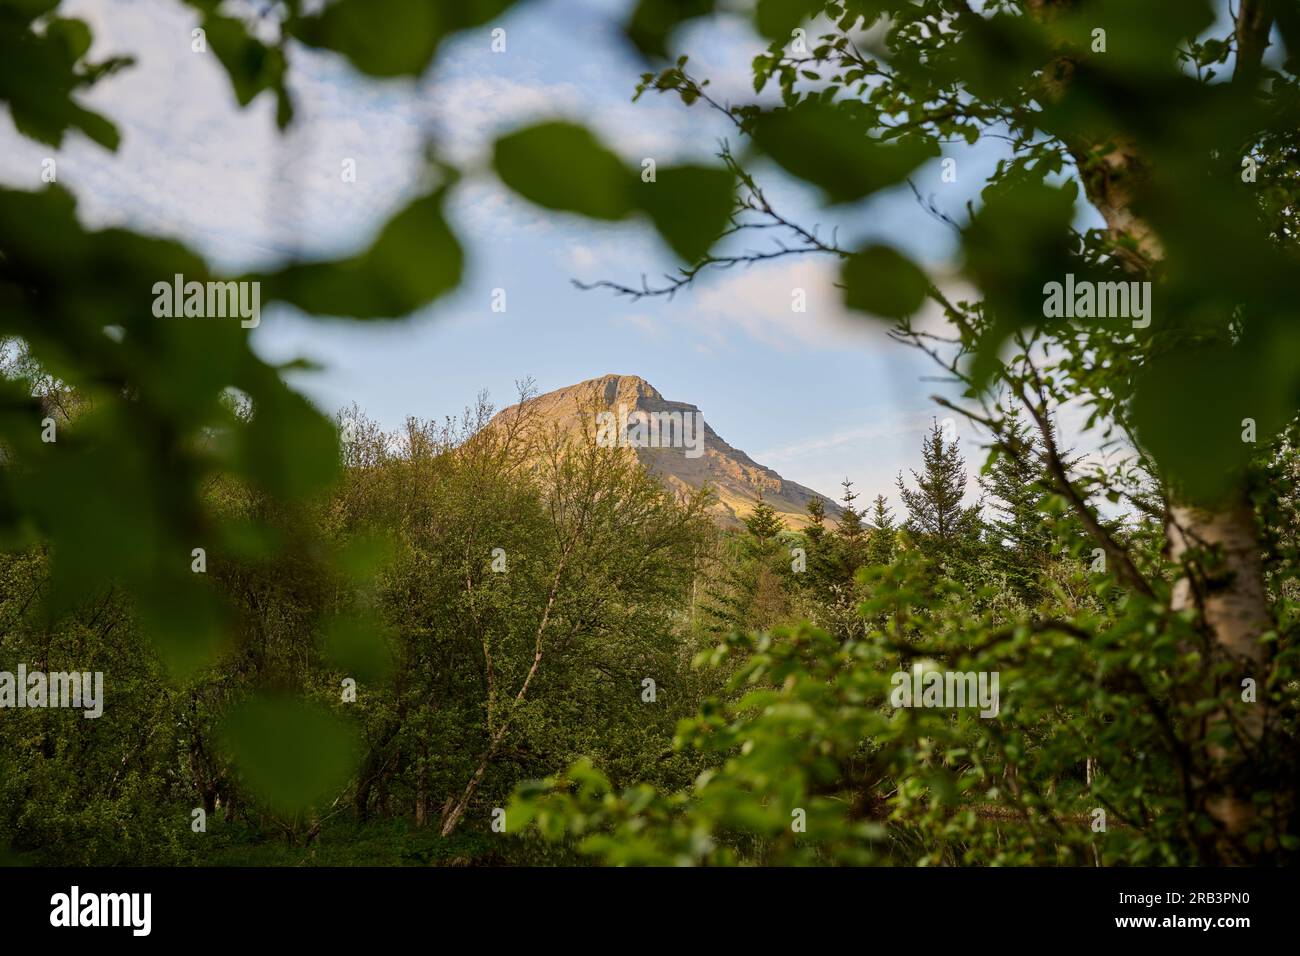 View through tree branches of mountain peak Stock Photo